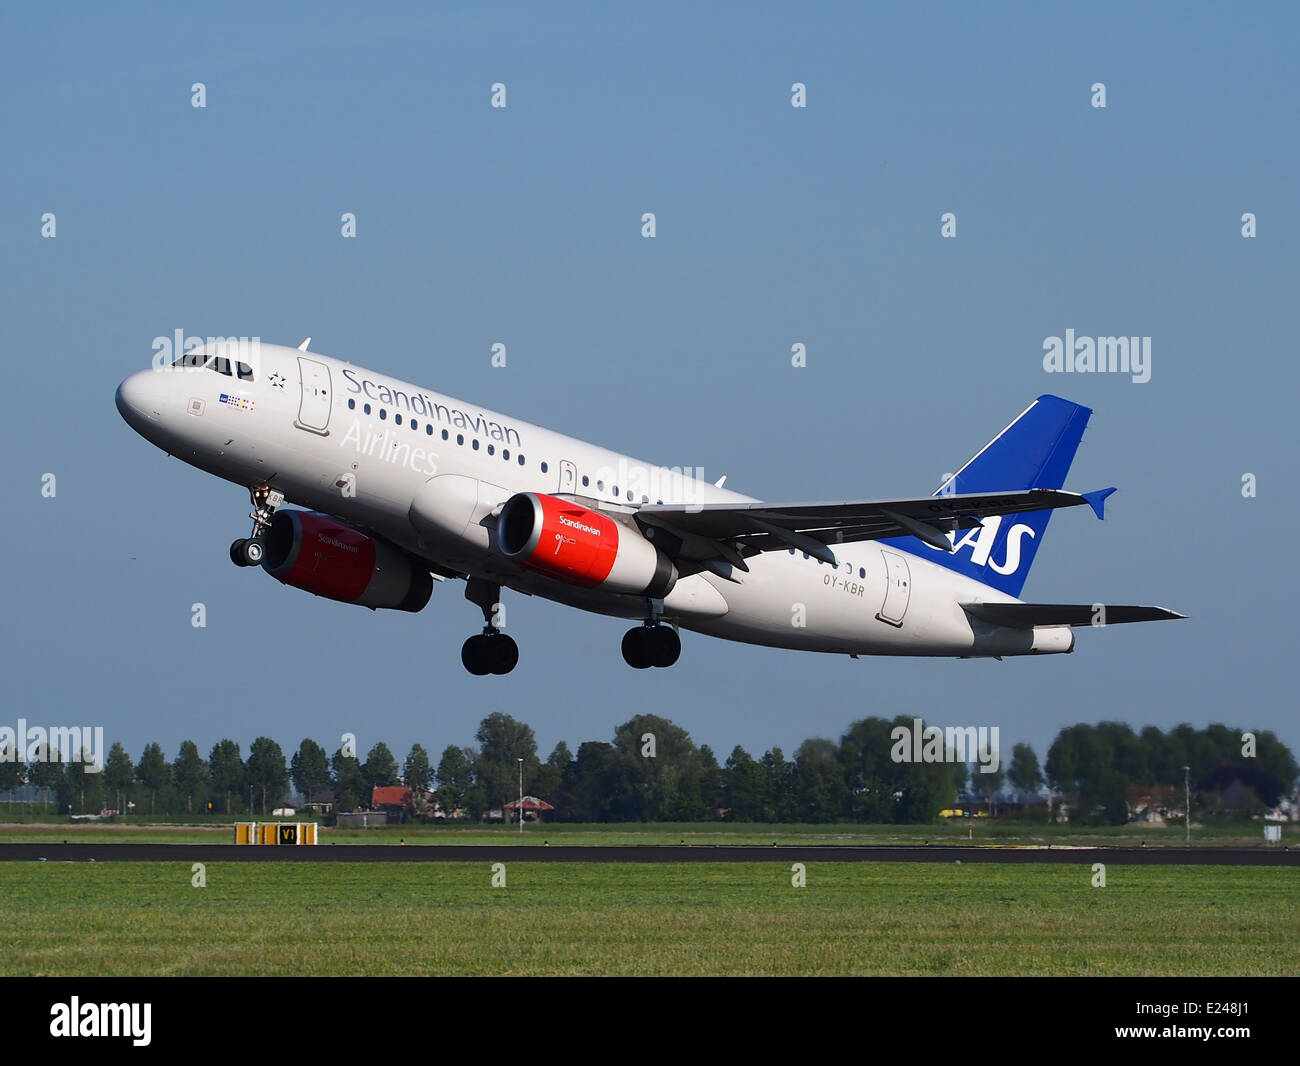 OY-KBR SAS Scandinavian Airlines Airbus A319-131 le décollage de l'aéroport de Schiphol (AMS - EHAM), aux Pays-Bas, 16mai2014, pic-1 Banque D'Images